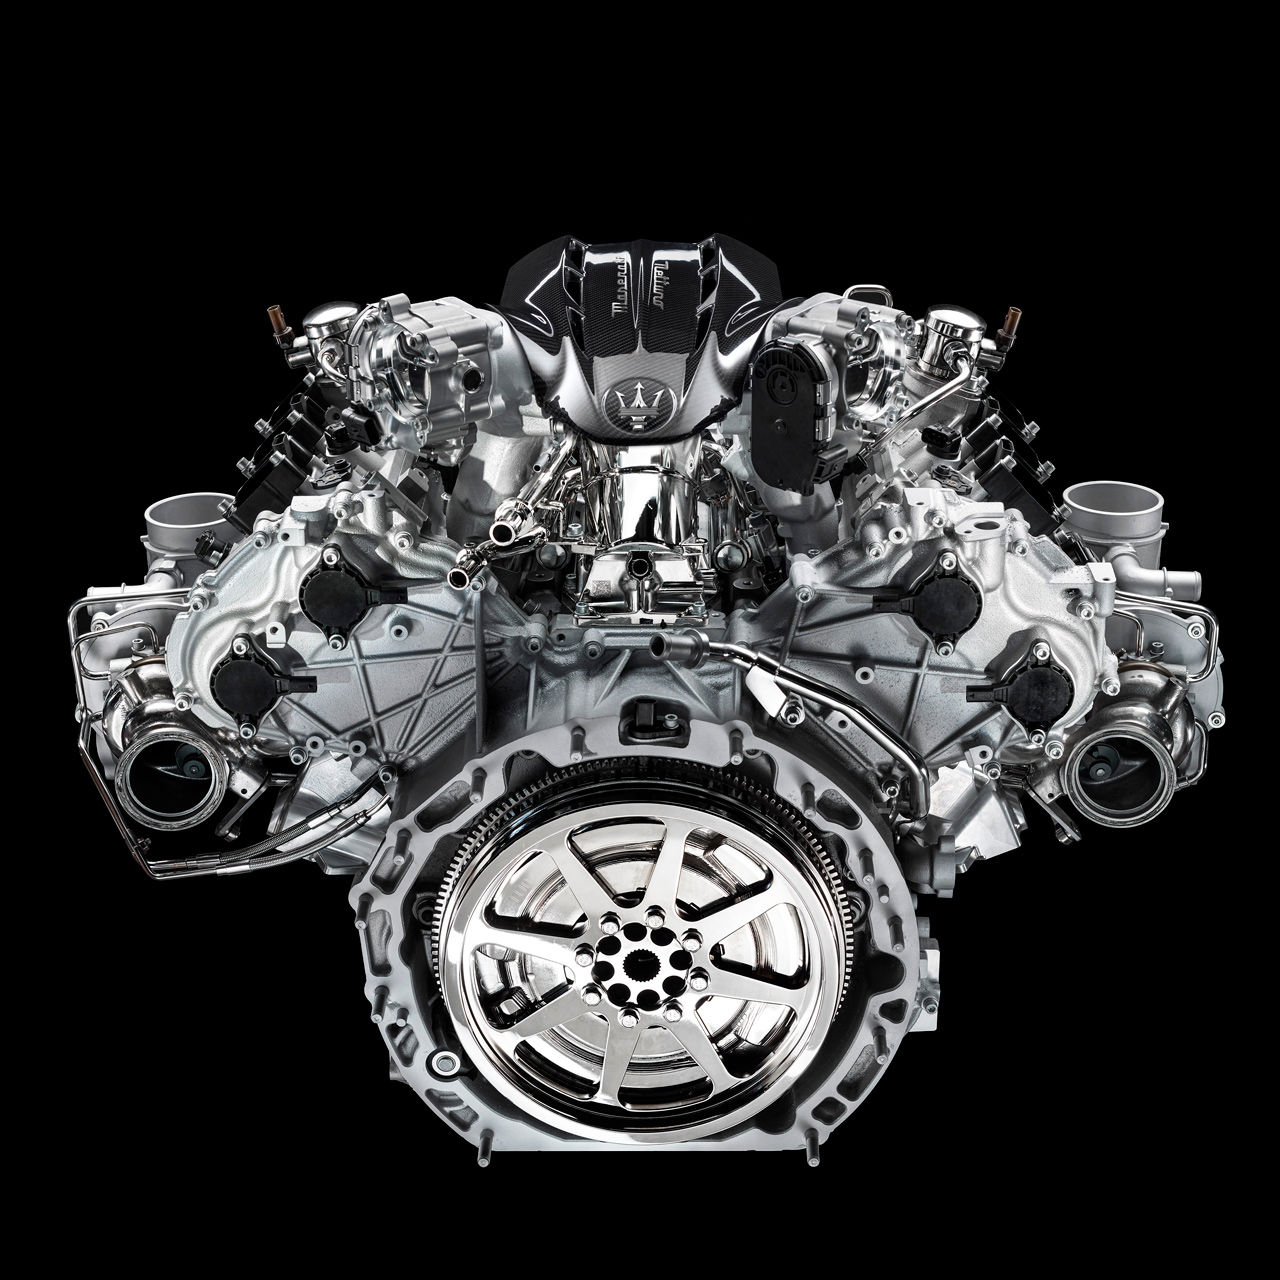 Nettuno Engine 